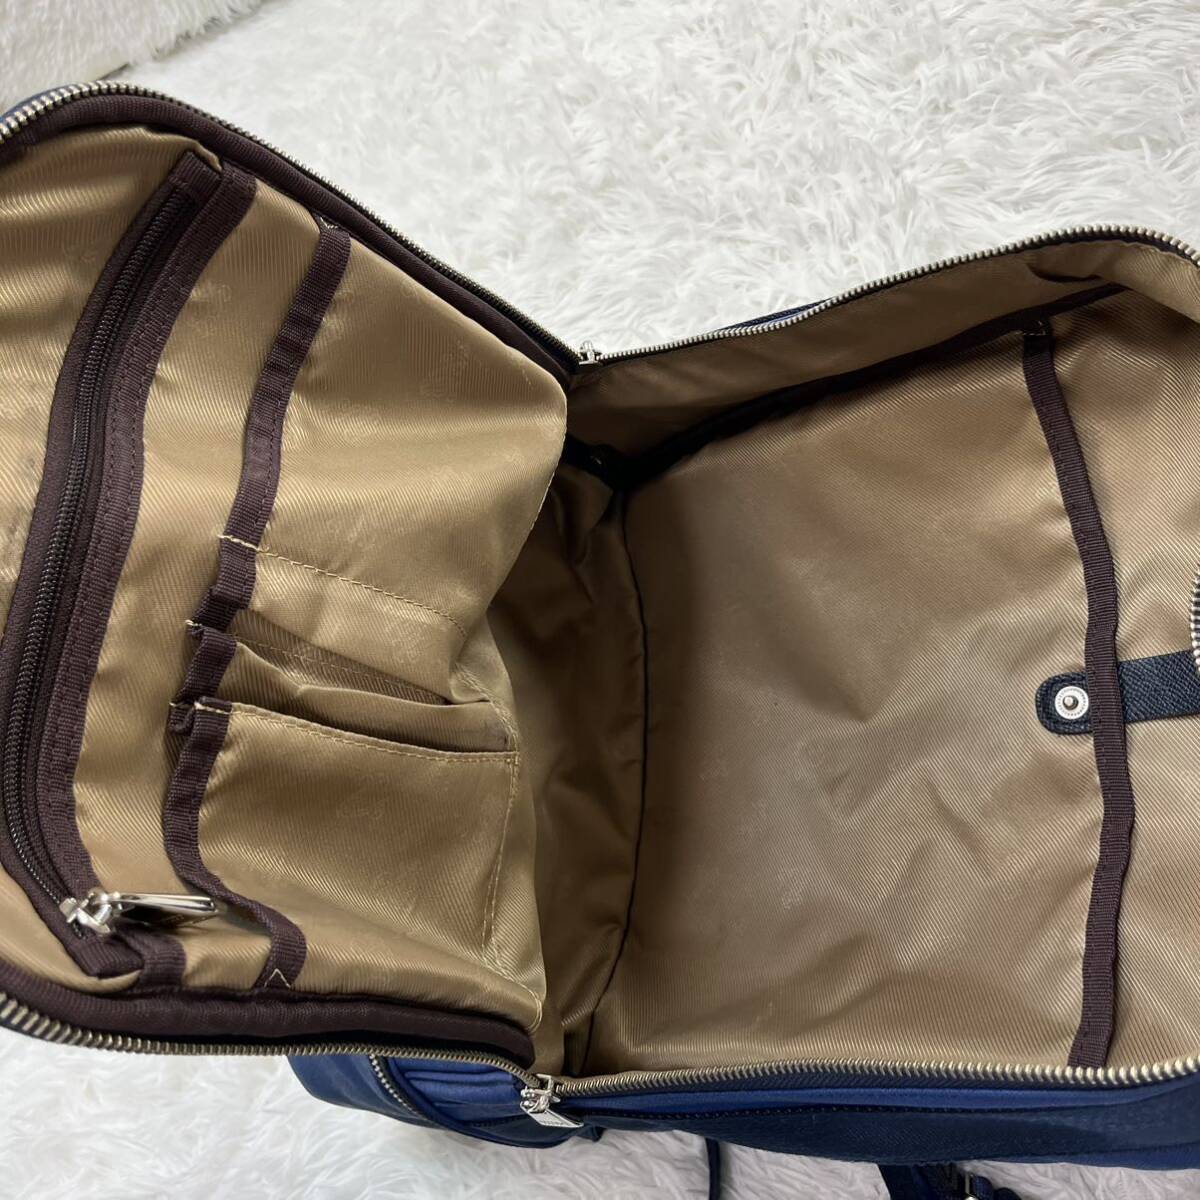  прекрасный товар *ultima tokyourutimato-kyo- рюкзак рюкзак портфель бизнес кожа большая вместимость A4 место хранения возможно синий blue 